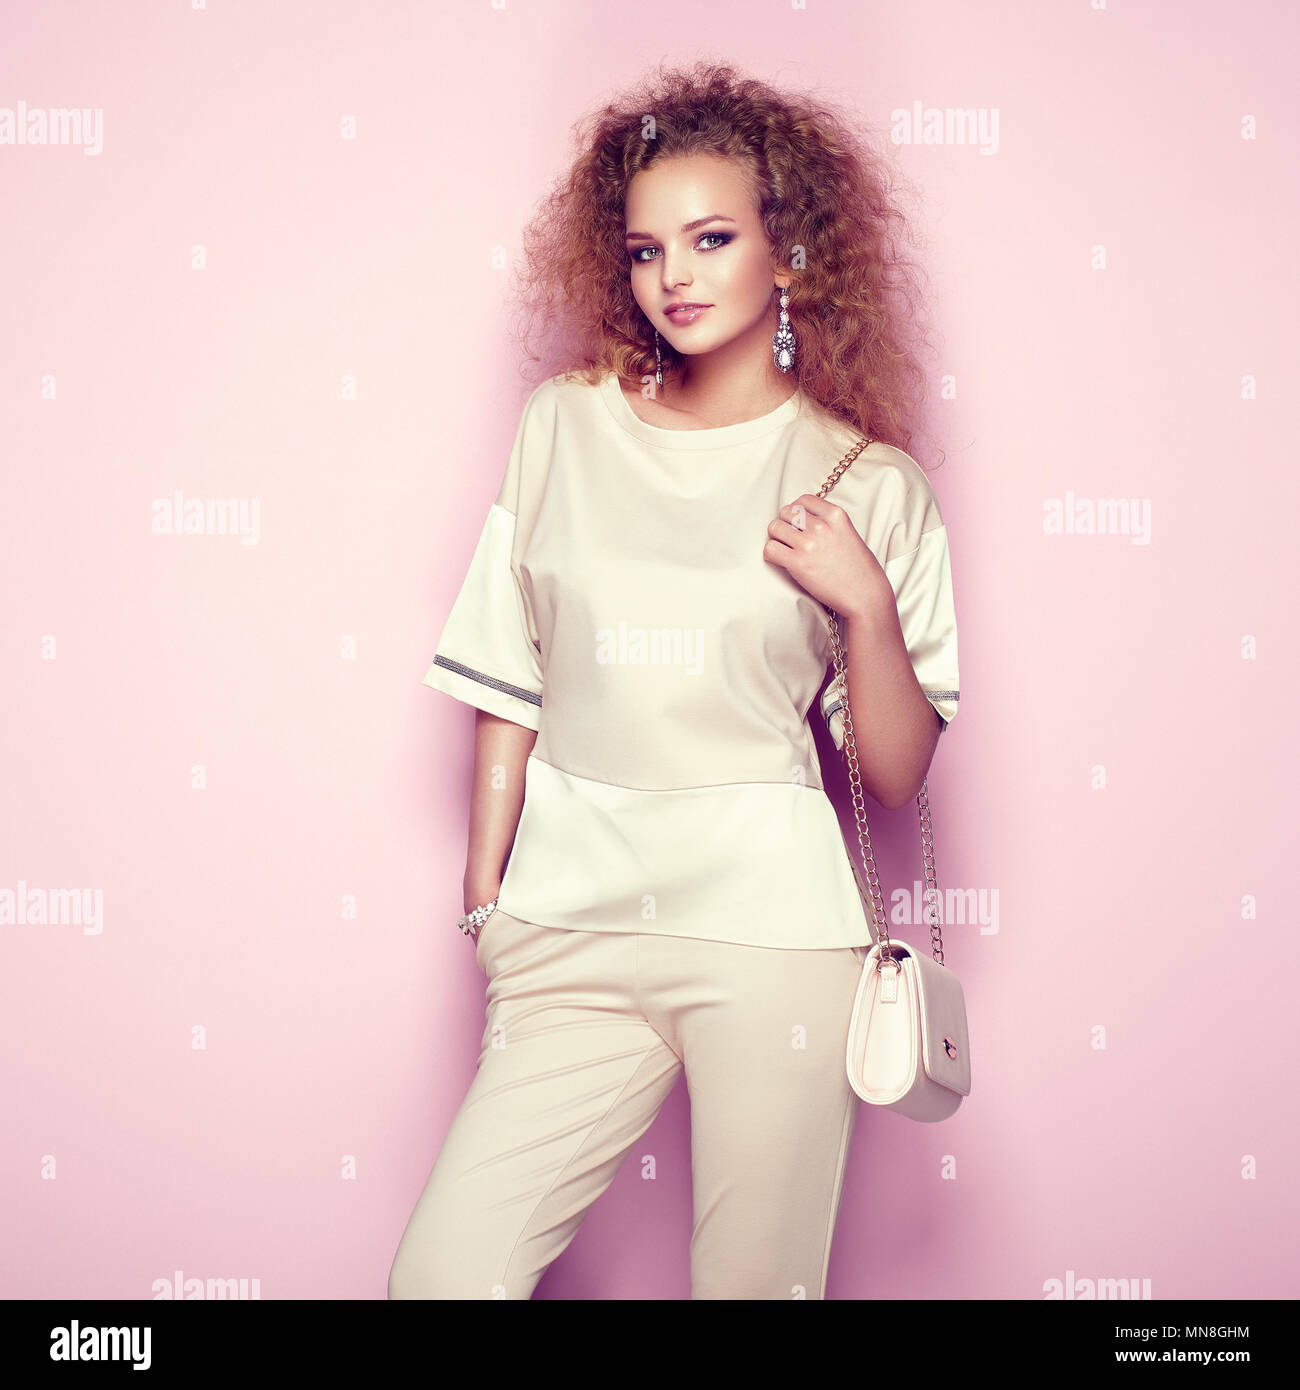 Mode Portrait von einer Frau im Sommer Outfit. Girl posiert auf rosa Hintergrund. Rosa Handtasche. Stilvolle curly Frisur. Glamour lady Stockfoto